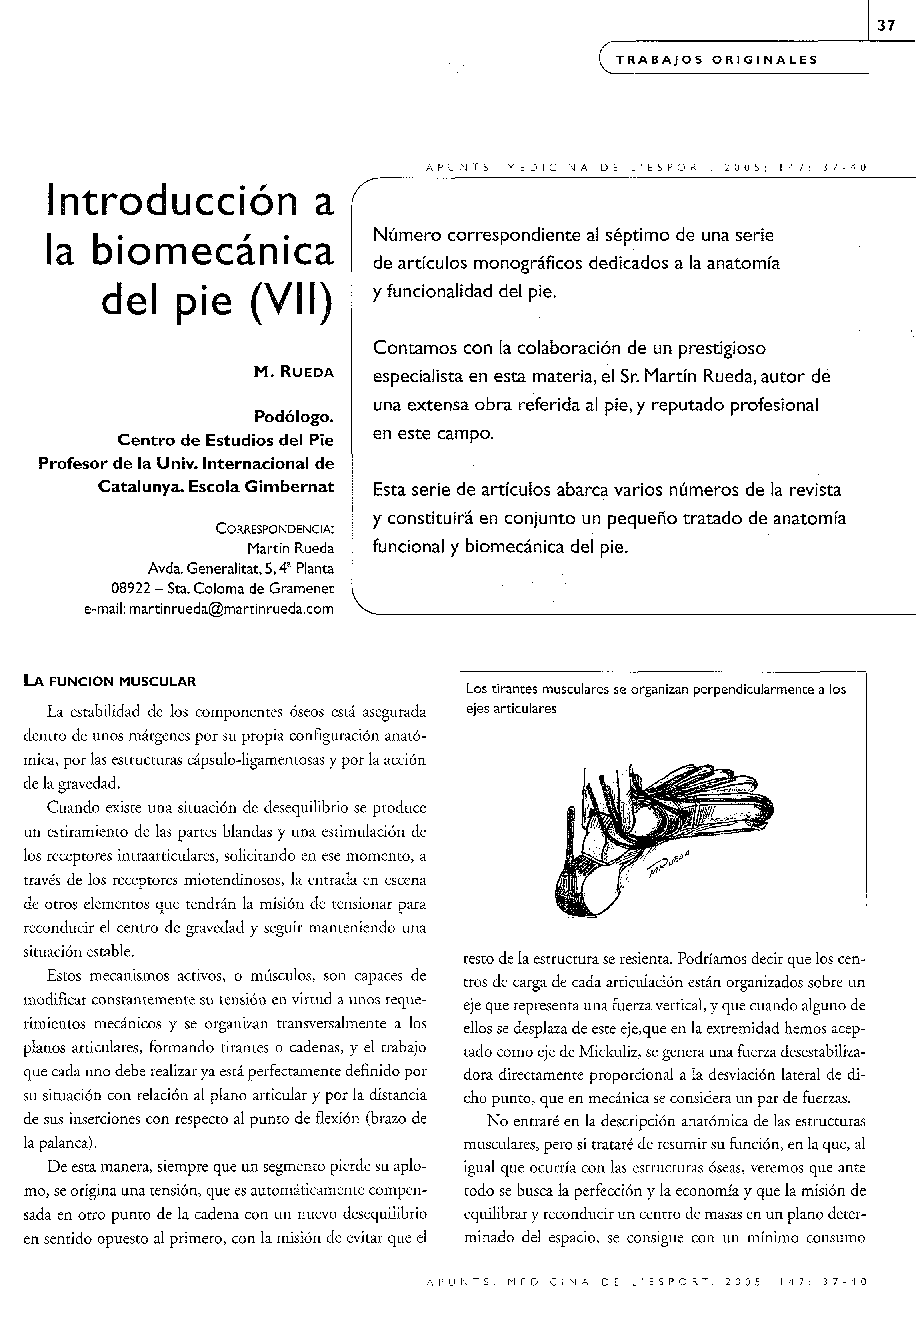 Introducción a la biomecánica del pie (VII)